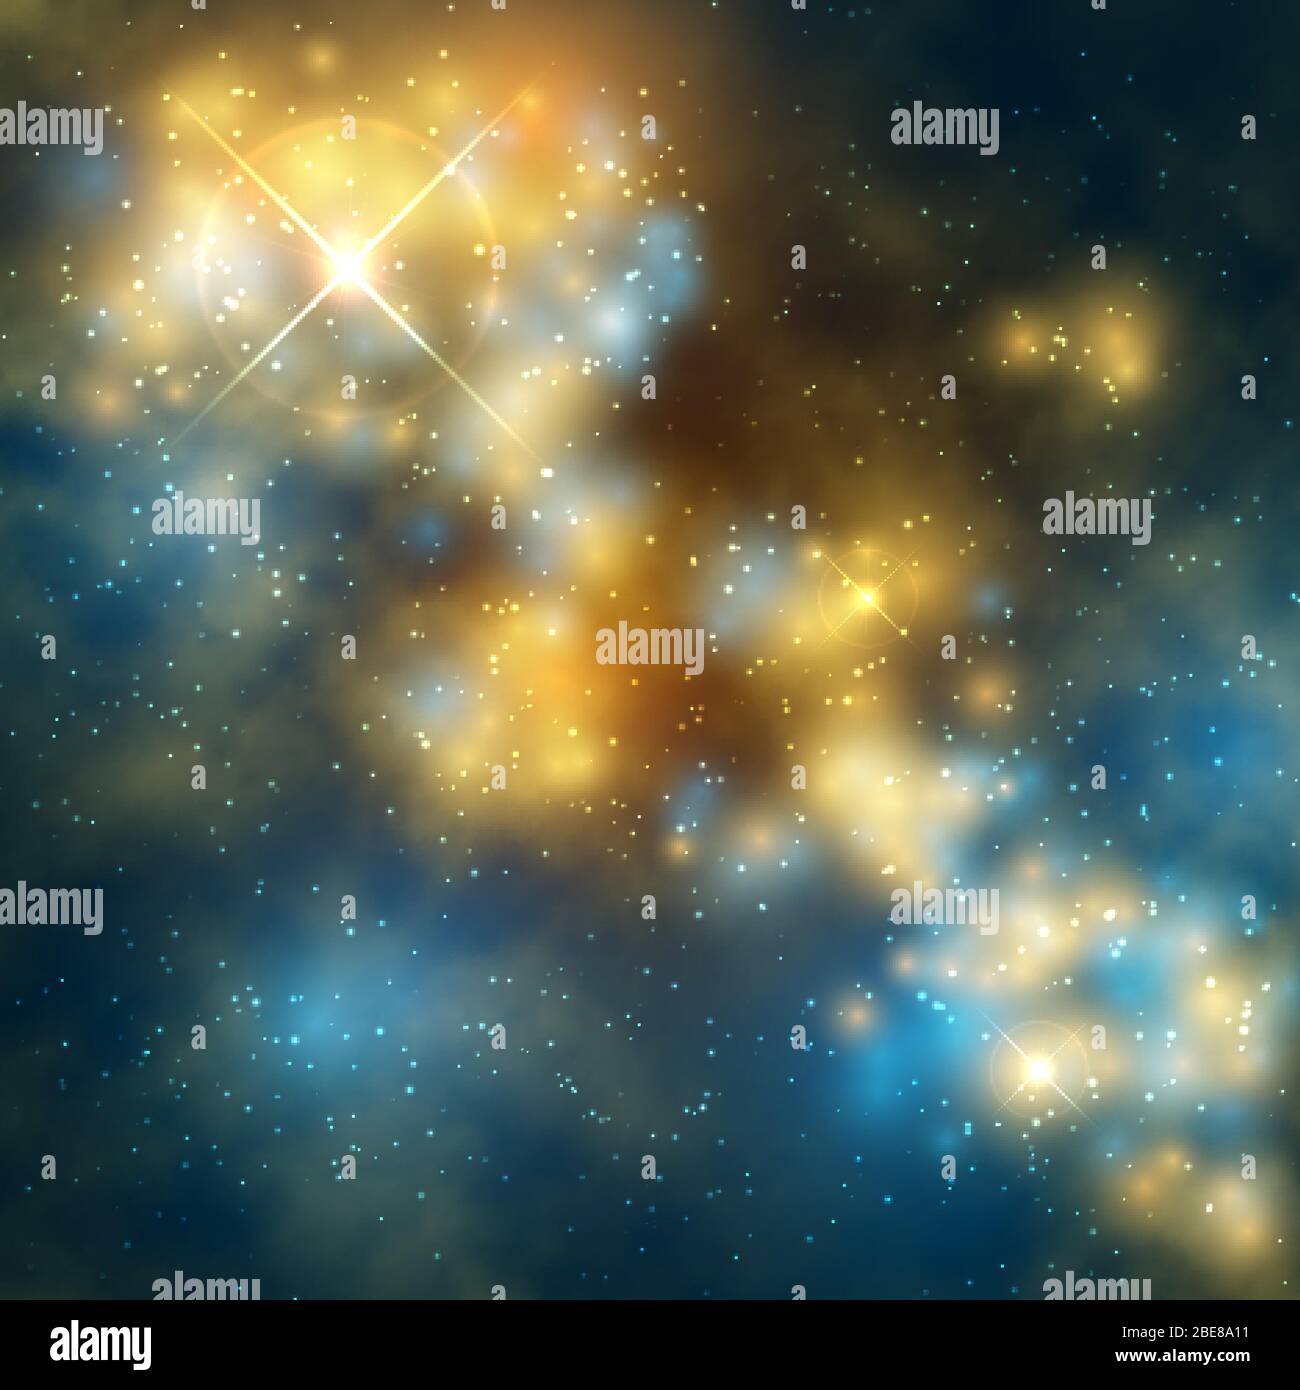 Weltraum Vektor abstrakter Hintergrund mit kosmischer Galaxie und Sternen. Raum und Galaxie mit Stern Hintergrund Illustration Stock Vektor